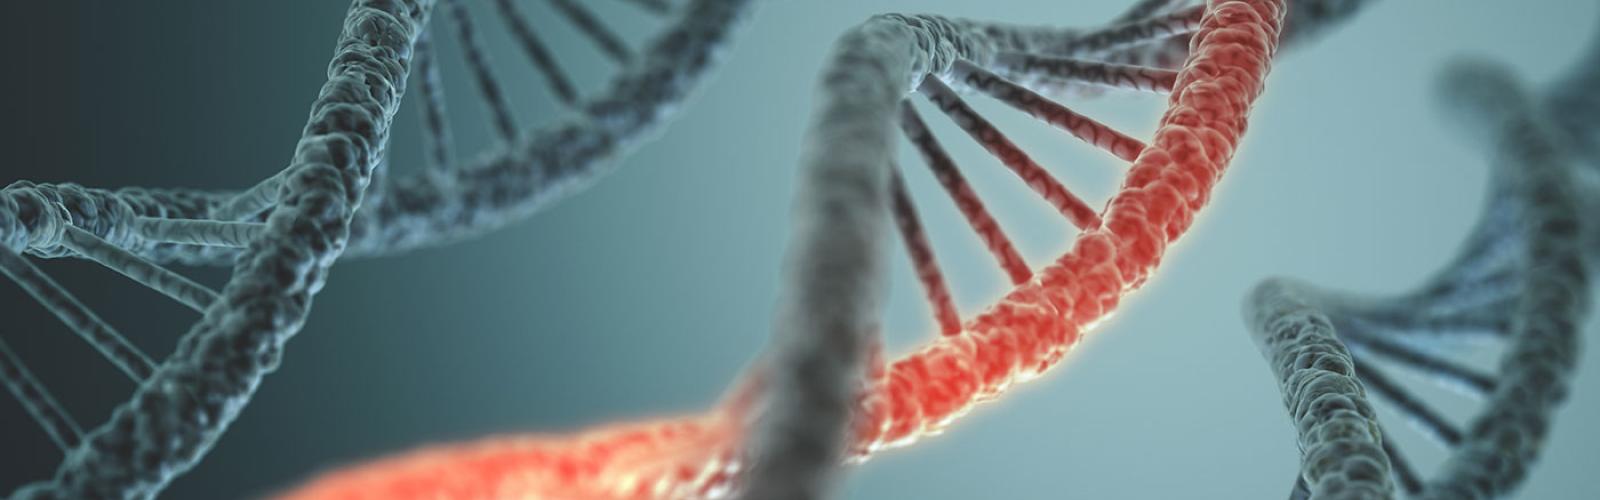 Three spirals of DNA on a blue background